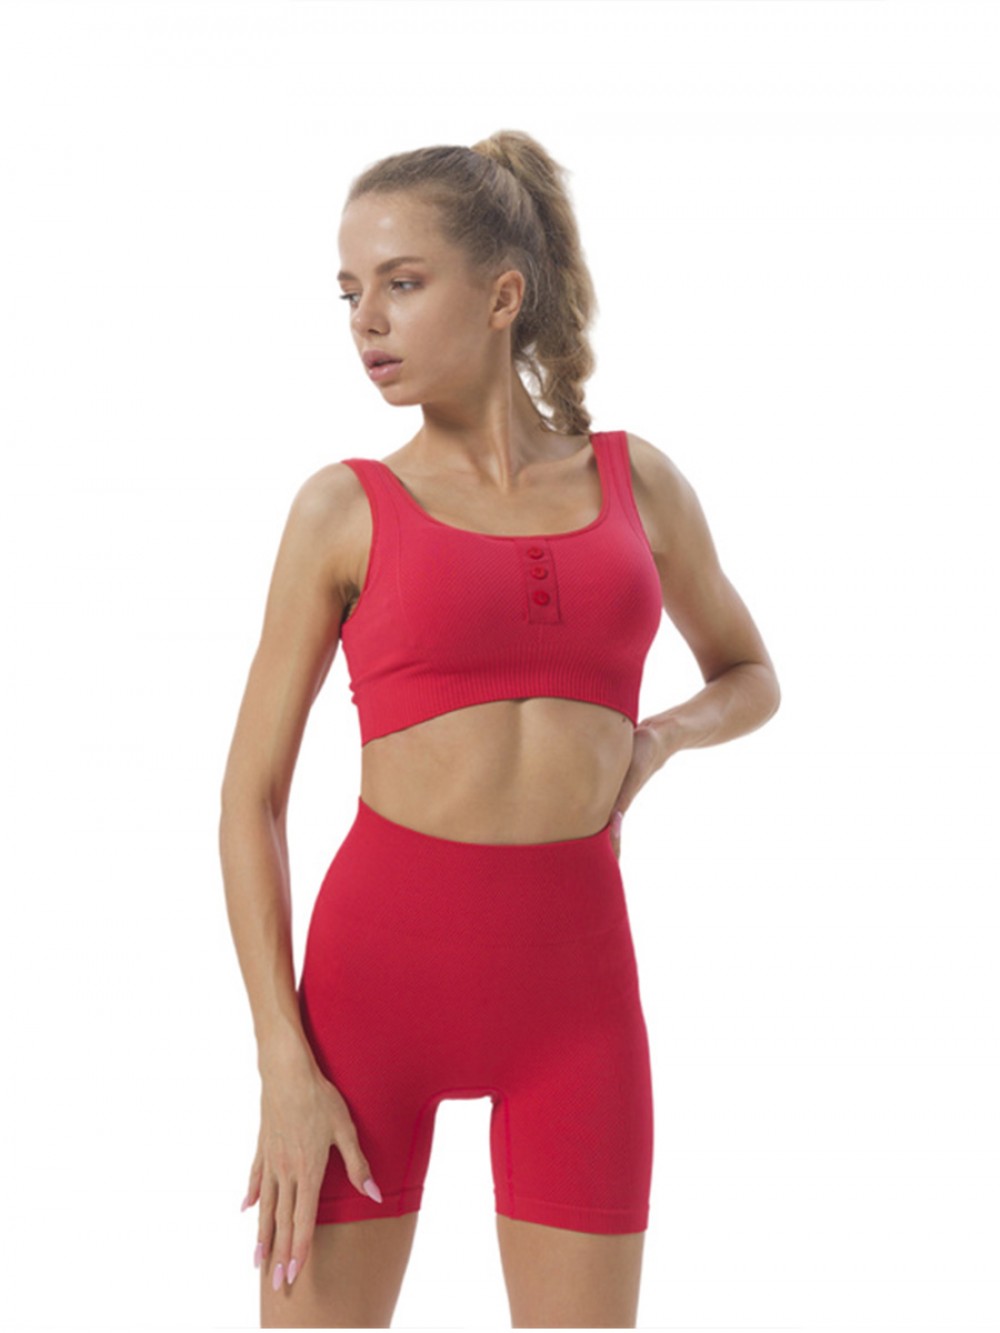 New Design Summer Fitness Yoga Short Set High Waist Hot Shorts Activewear